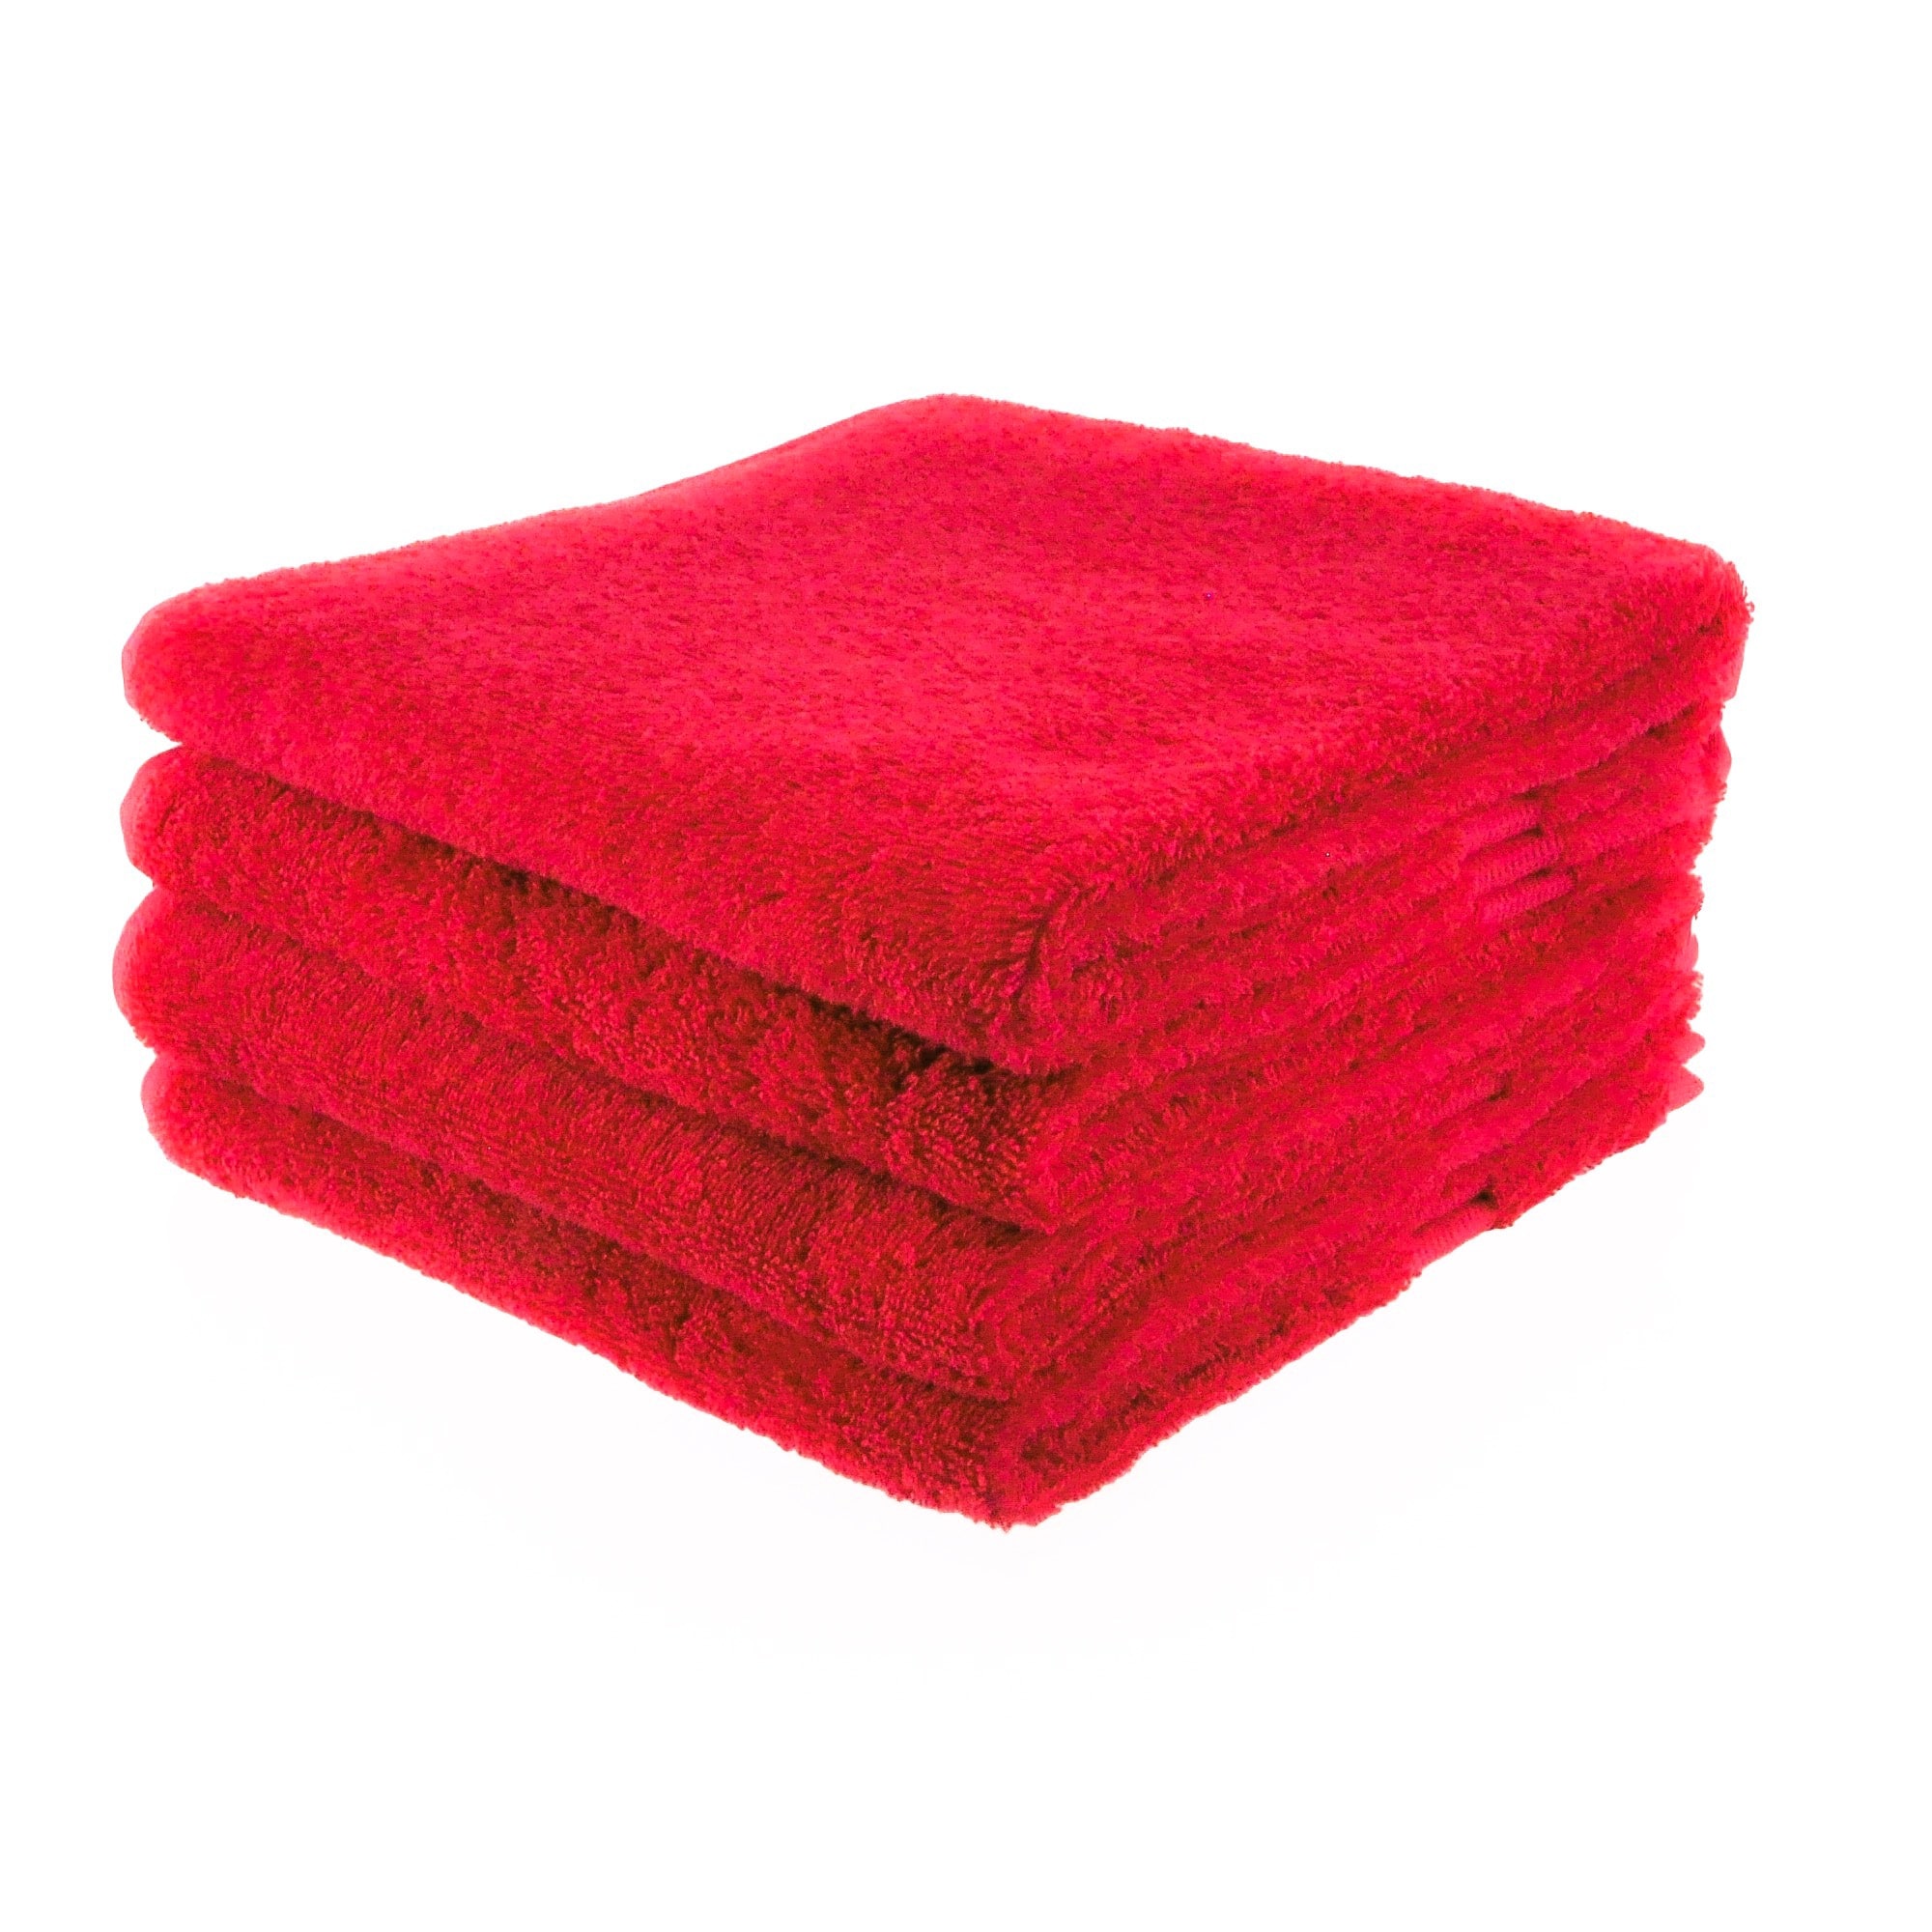 Afkeer ik heb honger priester Funnies Handdoek Rood - Havlu | More than a towel